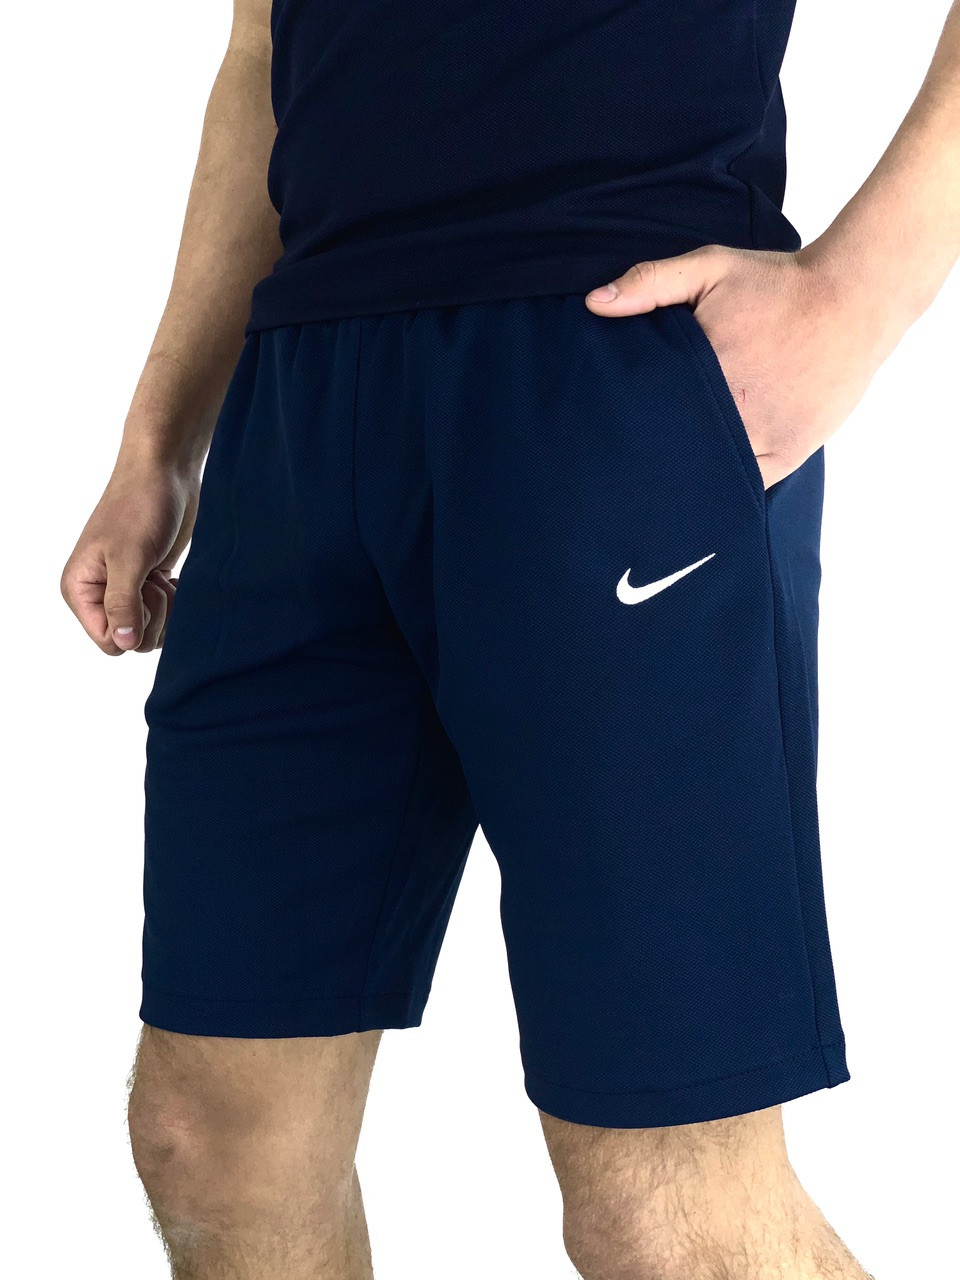 Nike шорти чоловічі трикотажні спортивні бриджі літні Найк сині